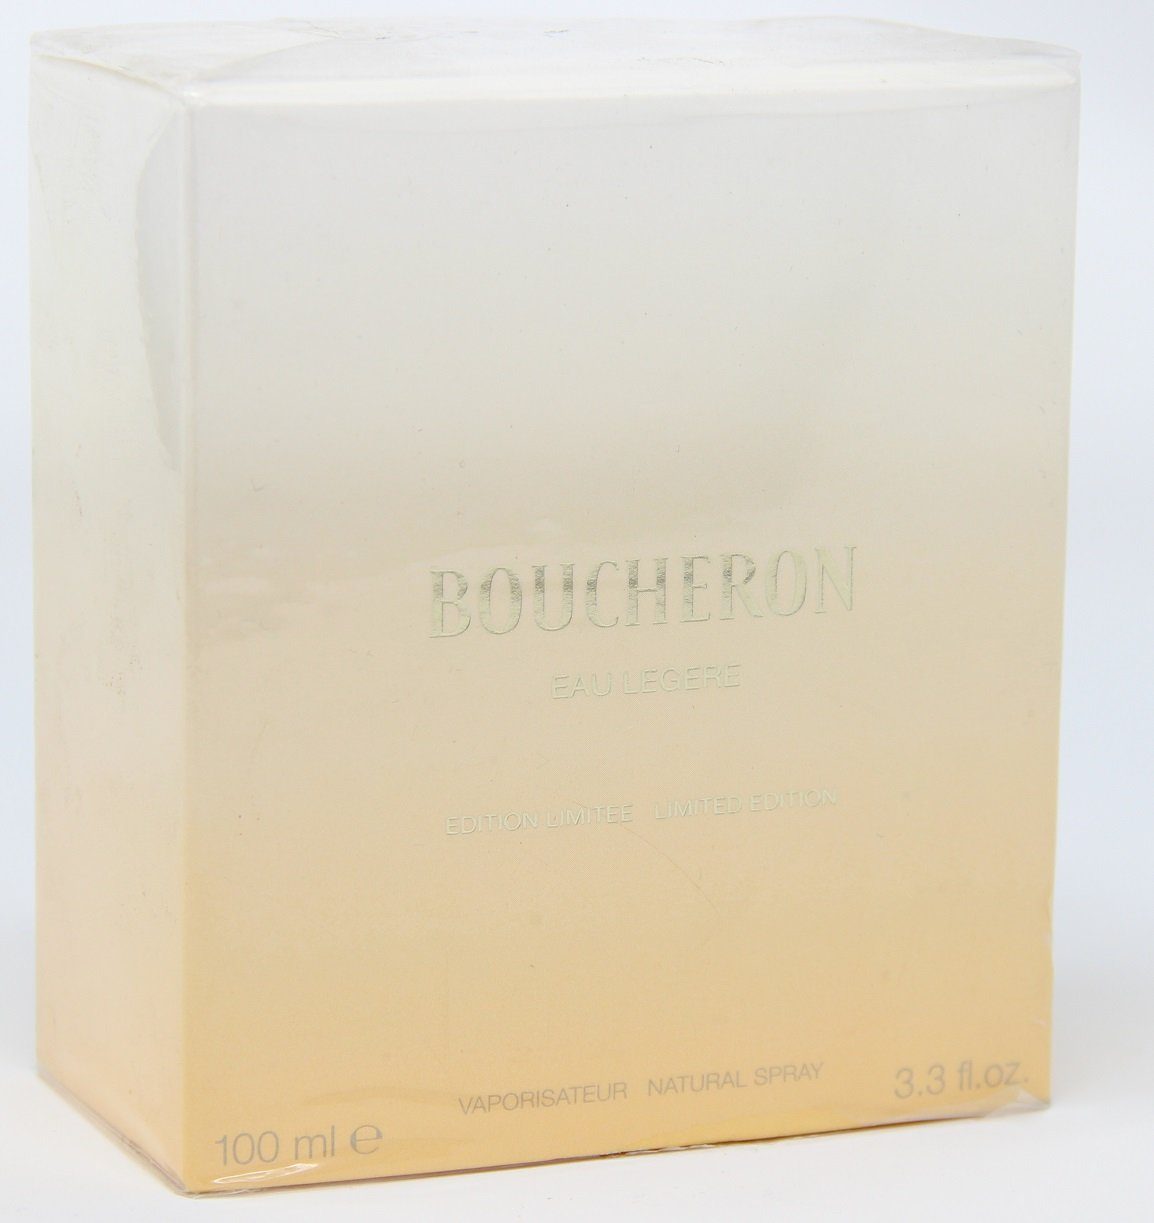 BOUCHERON Eau de Parfum Boucheron Eau Legere Limited Edition Natural Spray 100ml